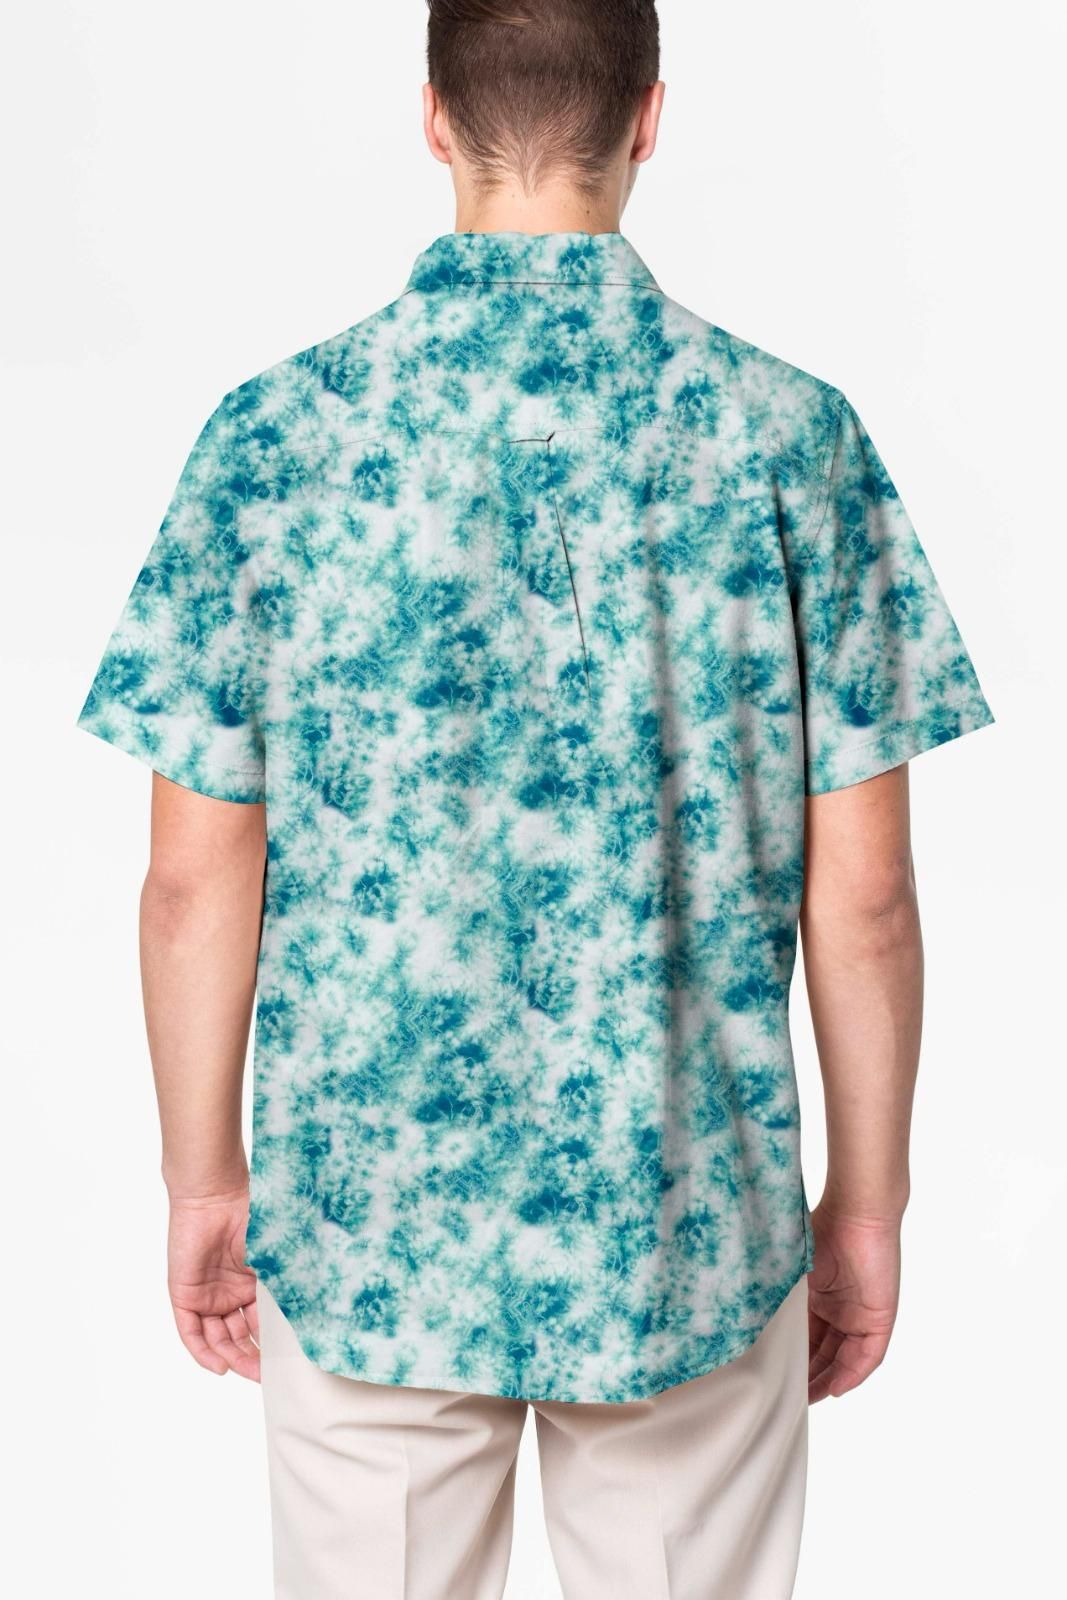 Men's Printed Casual Shirts